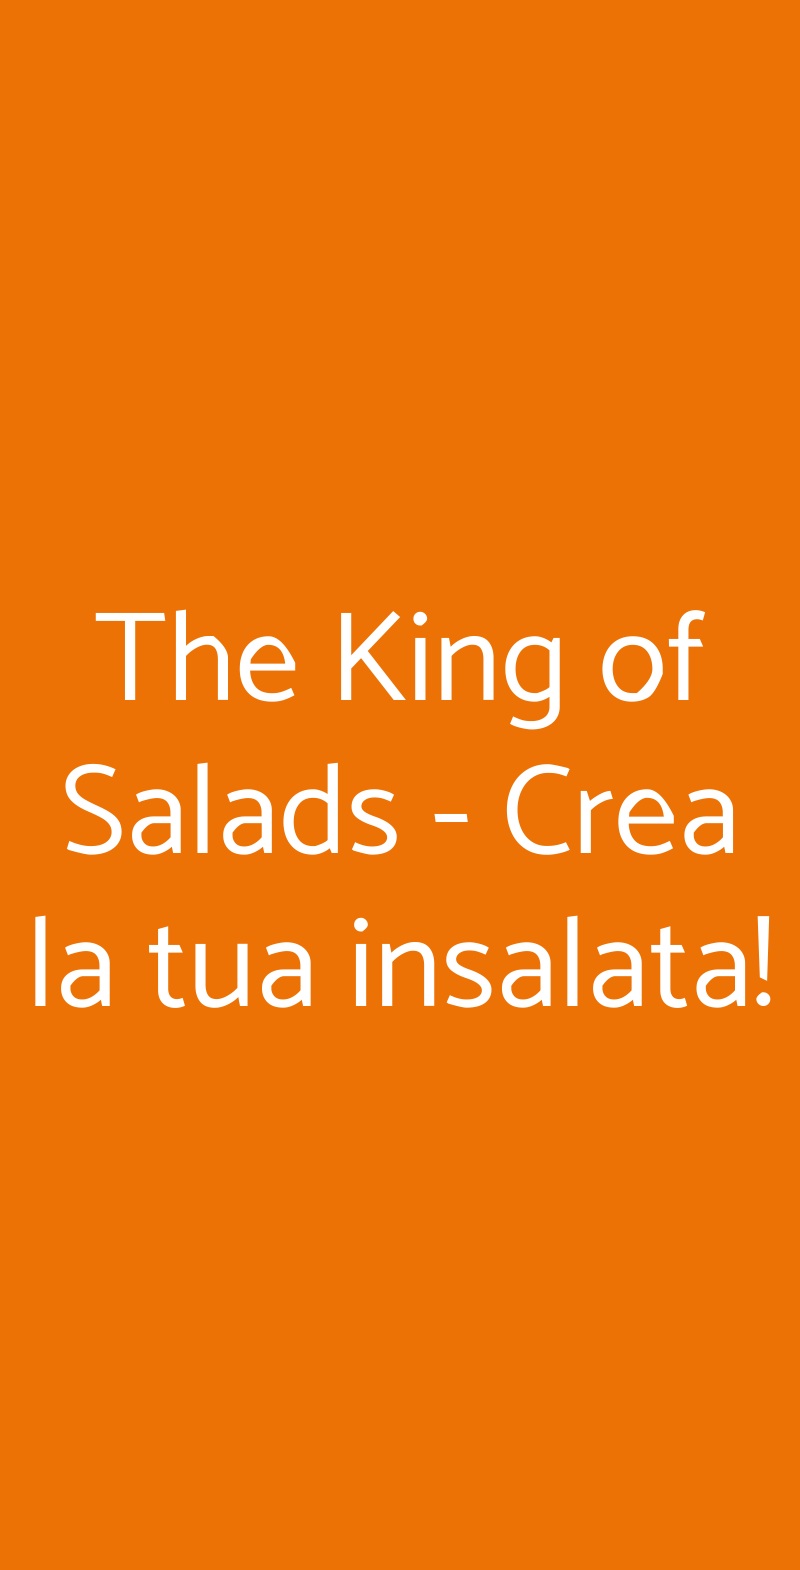 The King of Salads - Crea la tua insalata! Roma menù 1 pagina